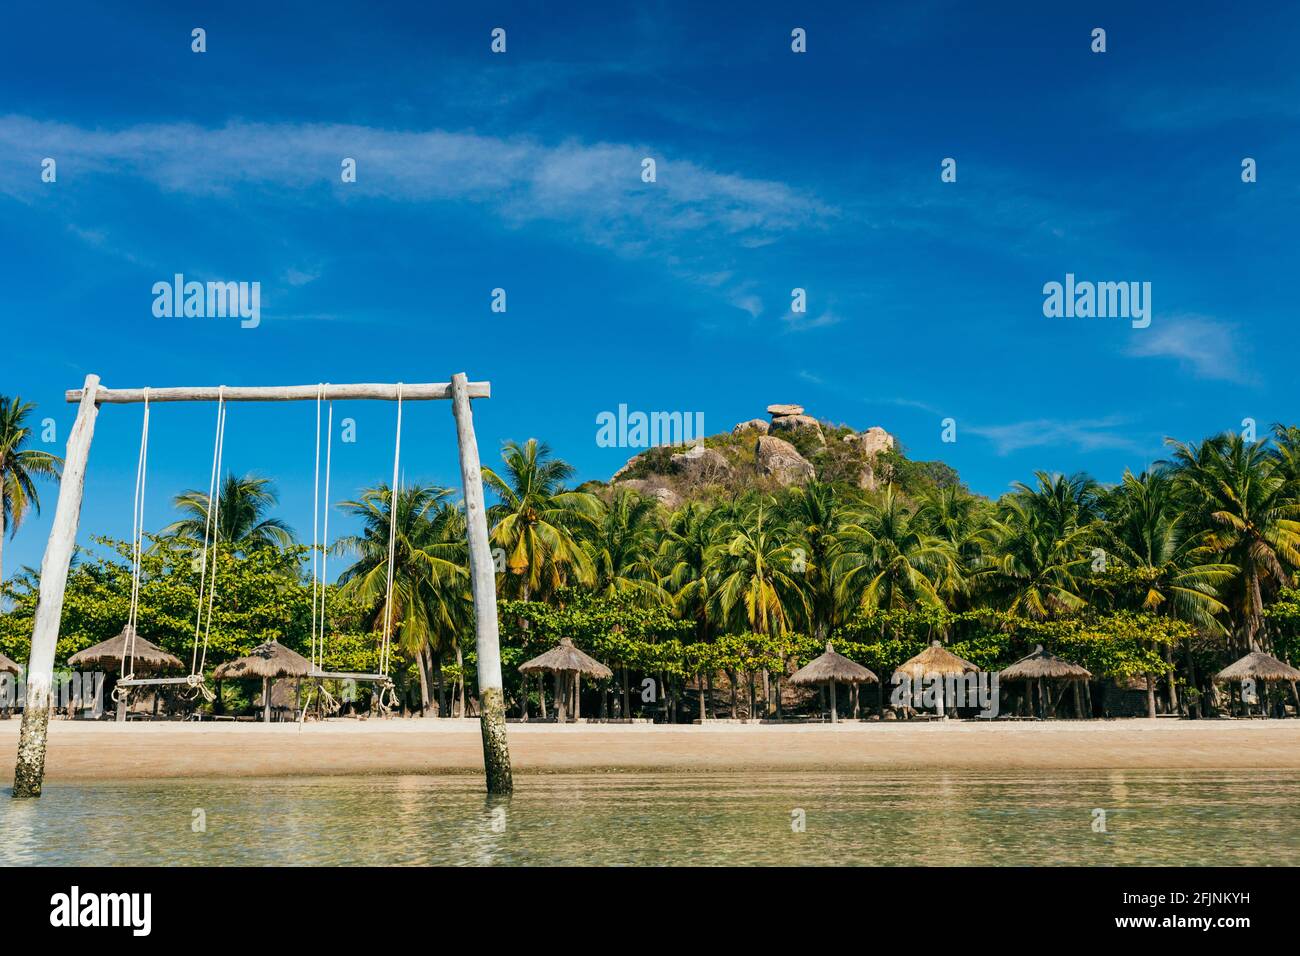 Una playa tropical con un columpio de madera en el agua, una playa de arena en una isla paradisíaca, una playa vacía con sombrillas cerca de los cocoteros con un moun Foto de stock